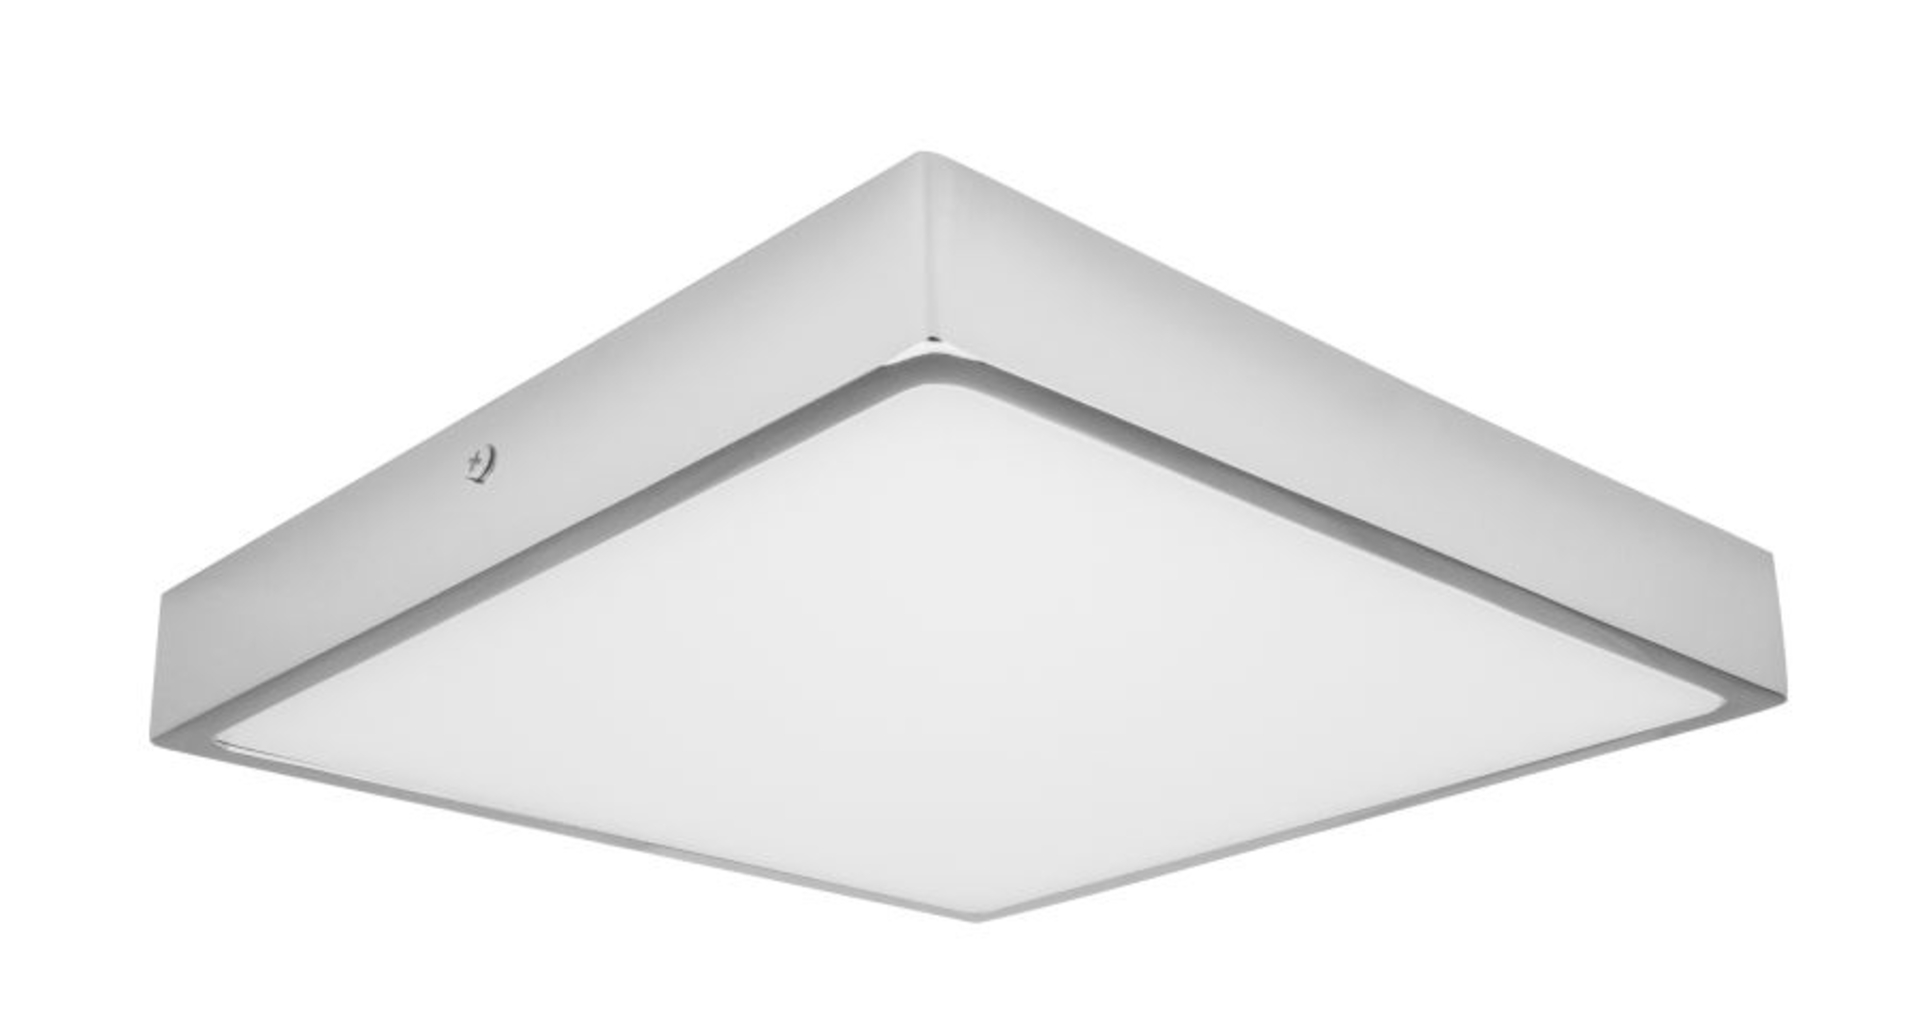 Palnas stropní LED svítidlo Egon čtverec 61003641